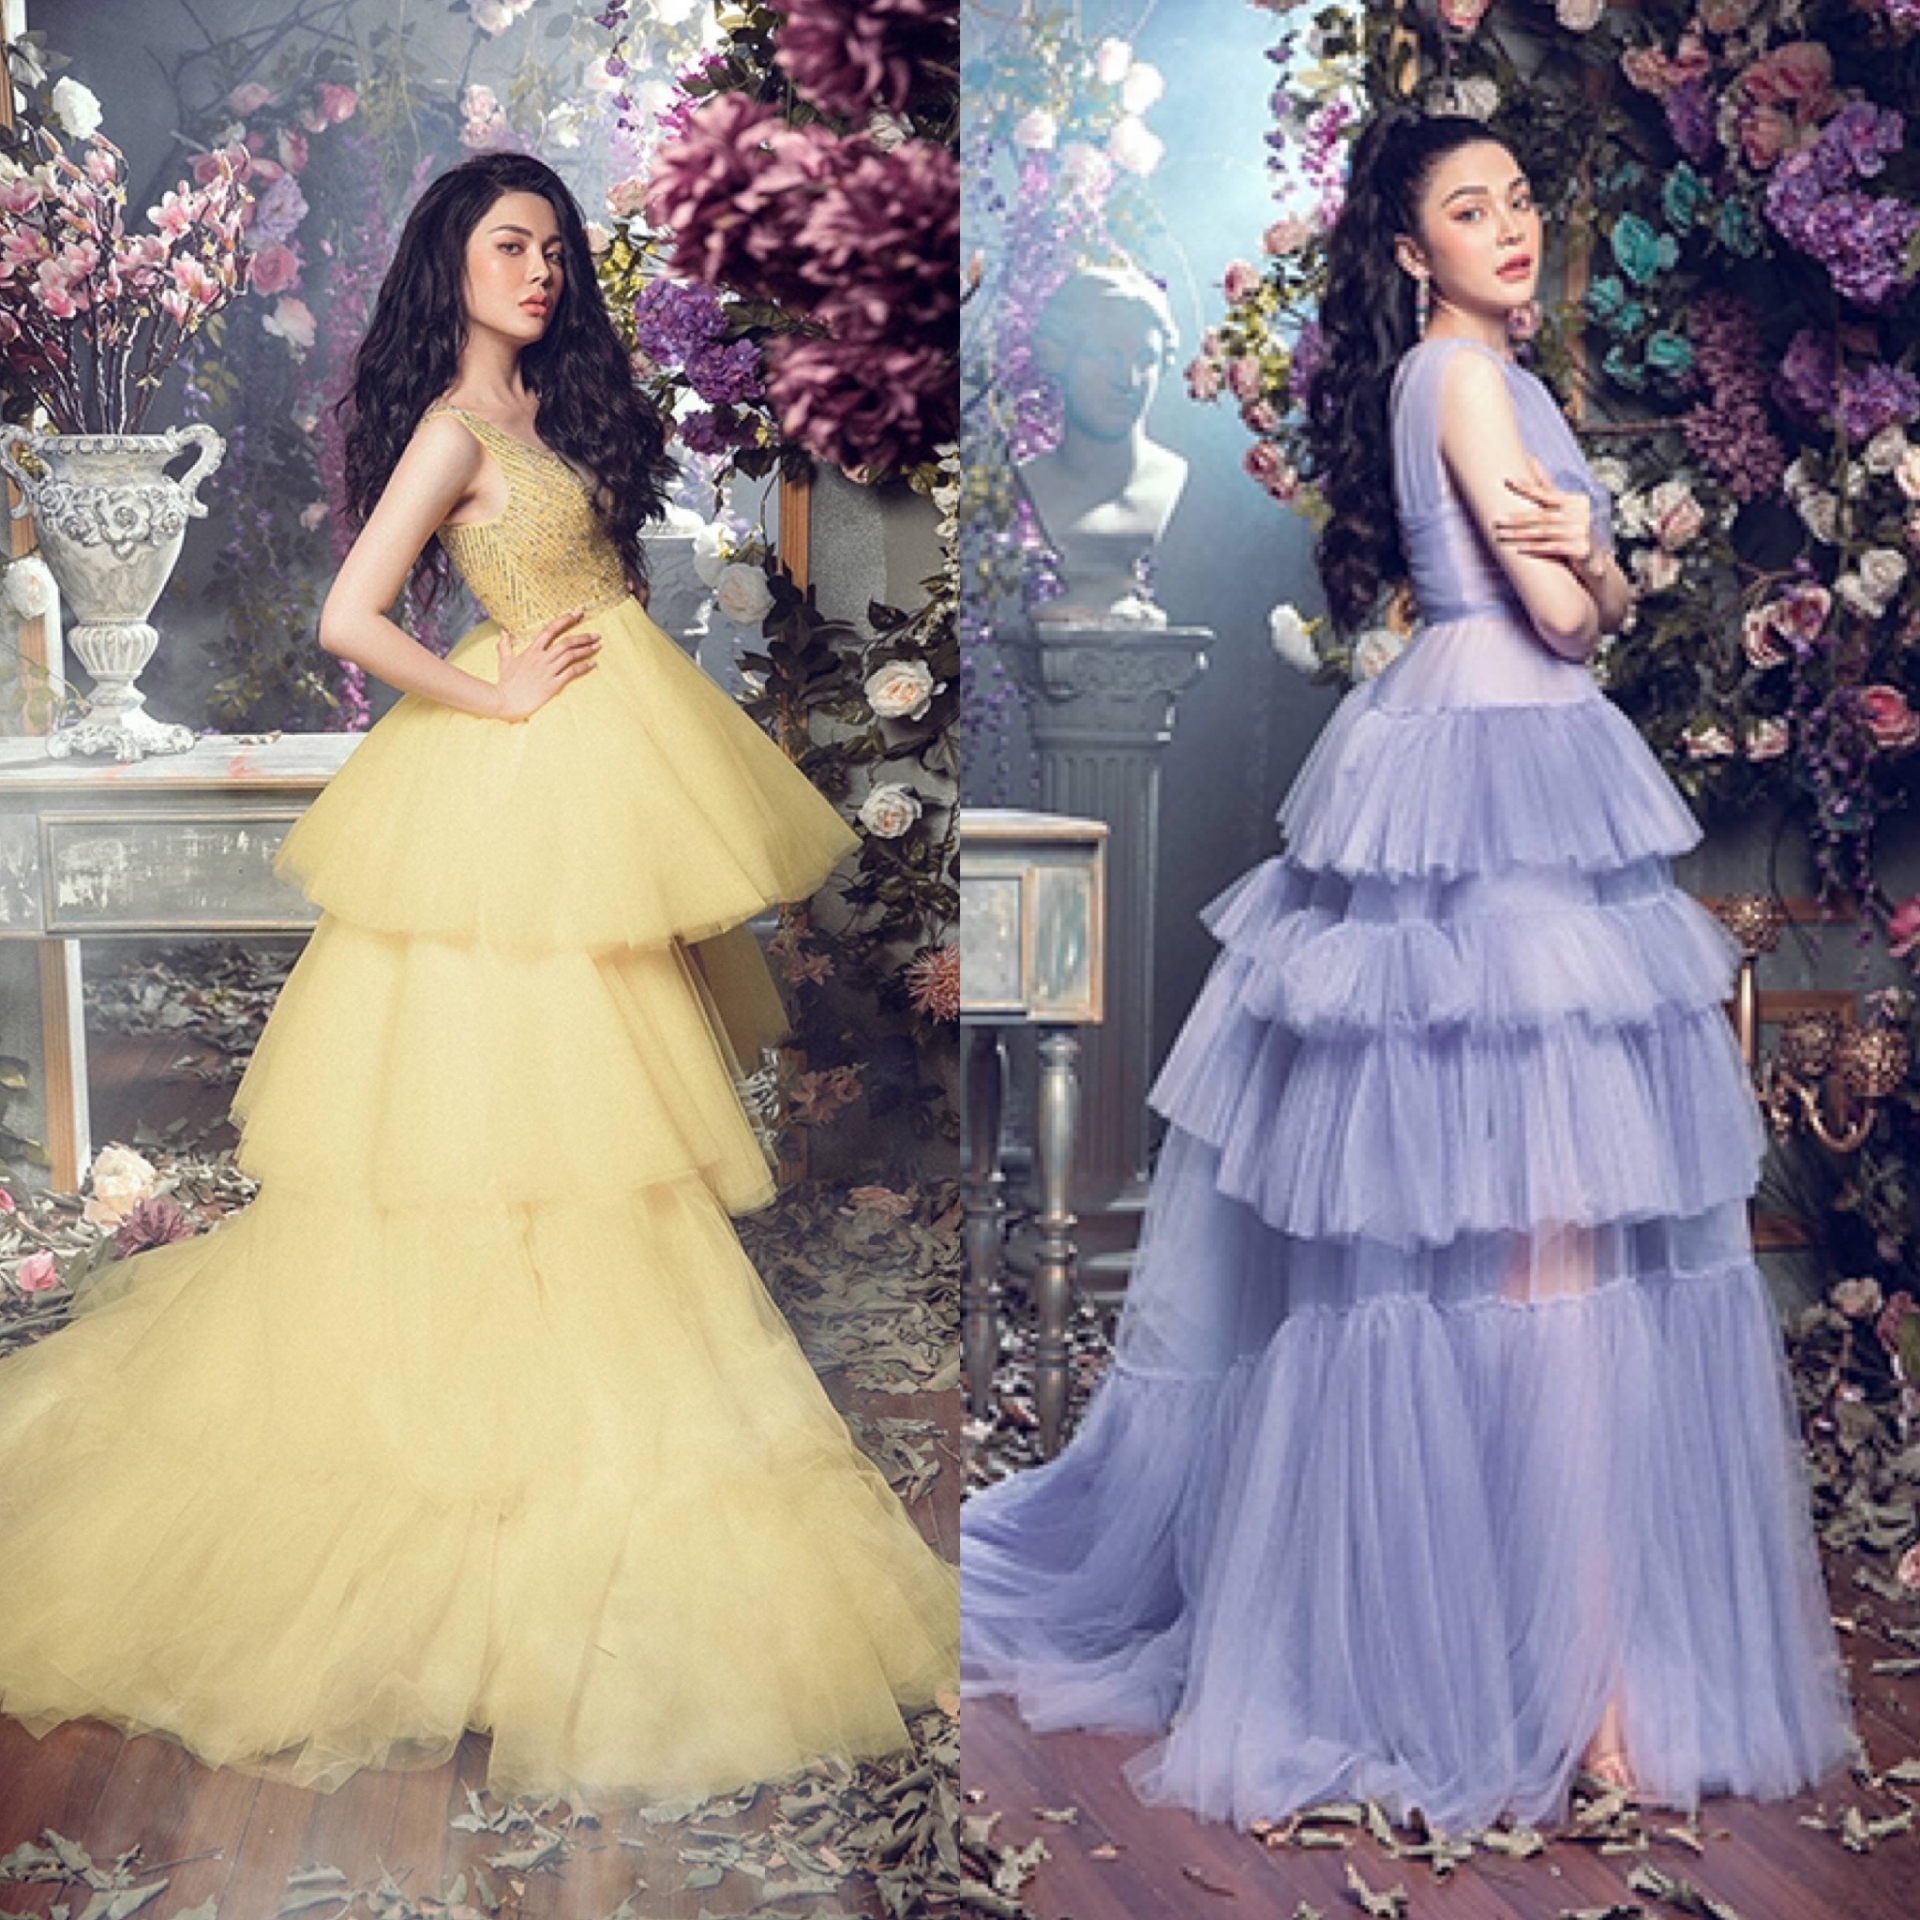 Lily Chen đầu tư hậu cảnh hoành tráng, khoe nhan sắc mặn mà, xinh đẹp trong 2 mẫu đầm công chúa có chất liệu và phom dáng tương tự dần chị.